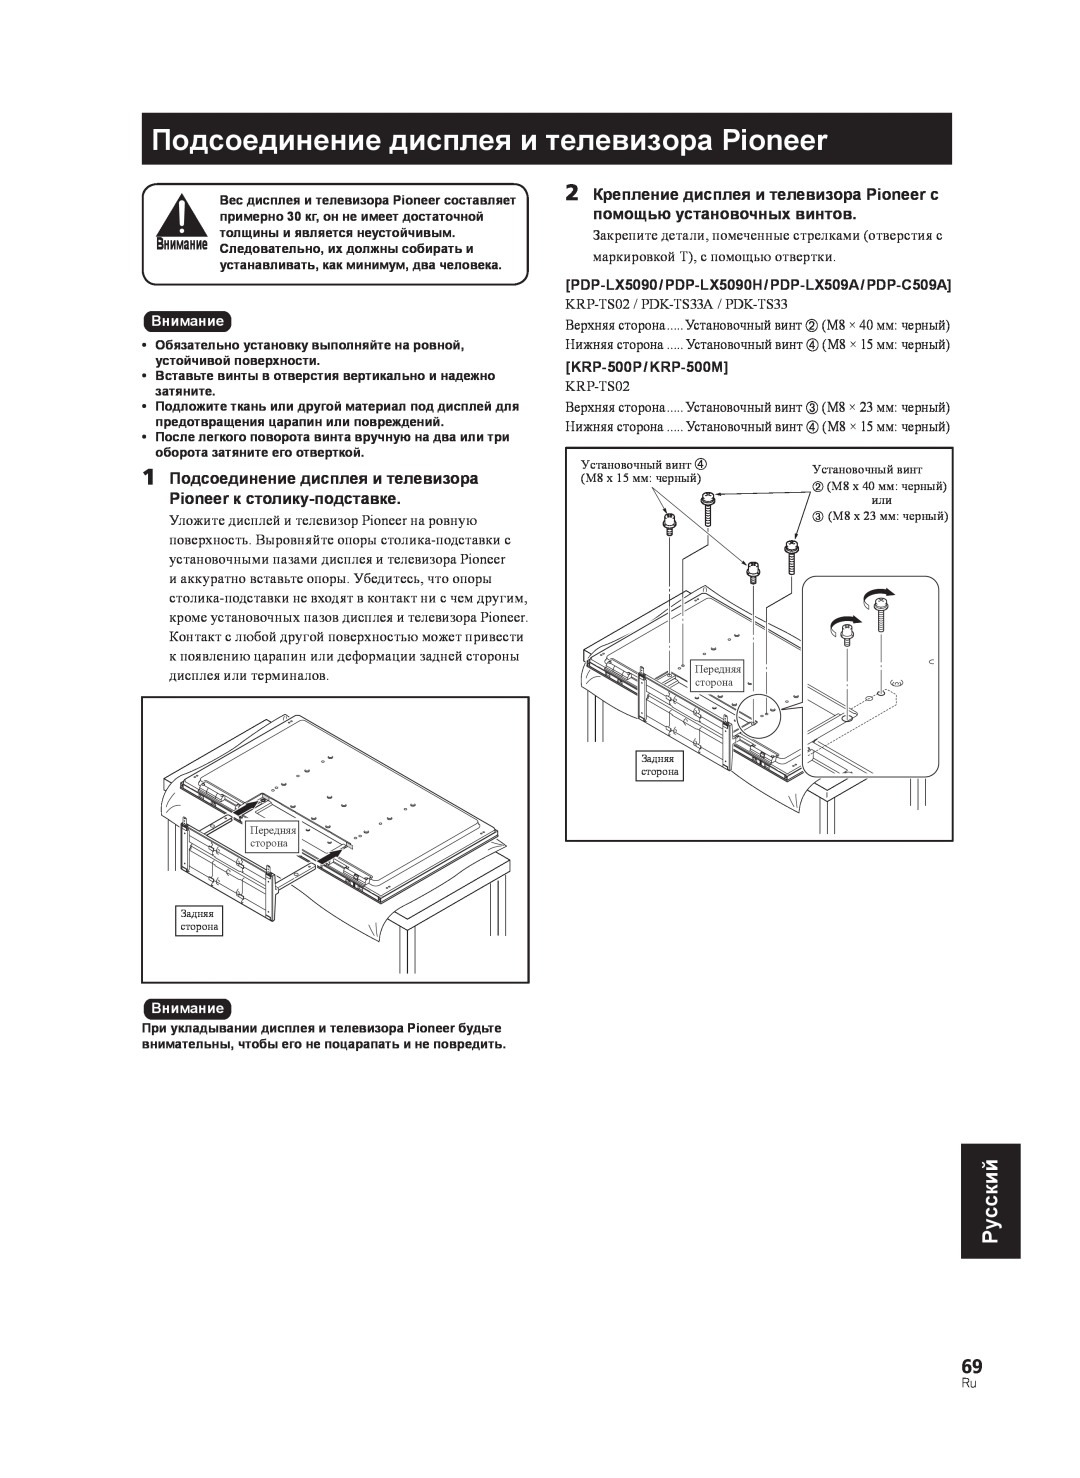 Pioneer PDK-TS33A manual Подсоединение дисплея и телевизора Pioneer, Pyccкий, маркировкой T, с помощью отвертки, Внимание 